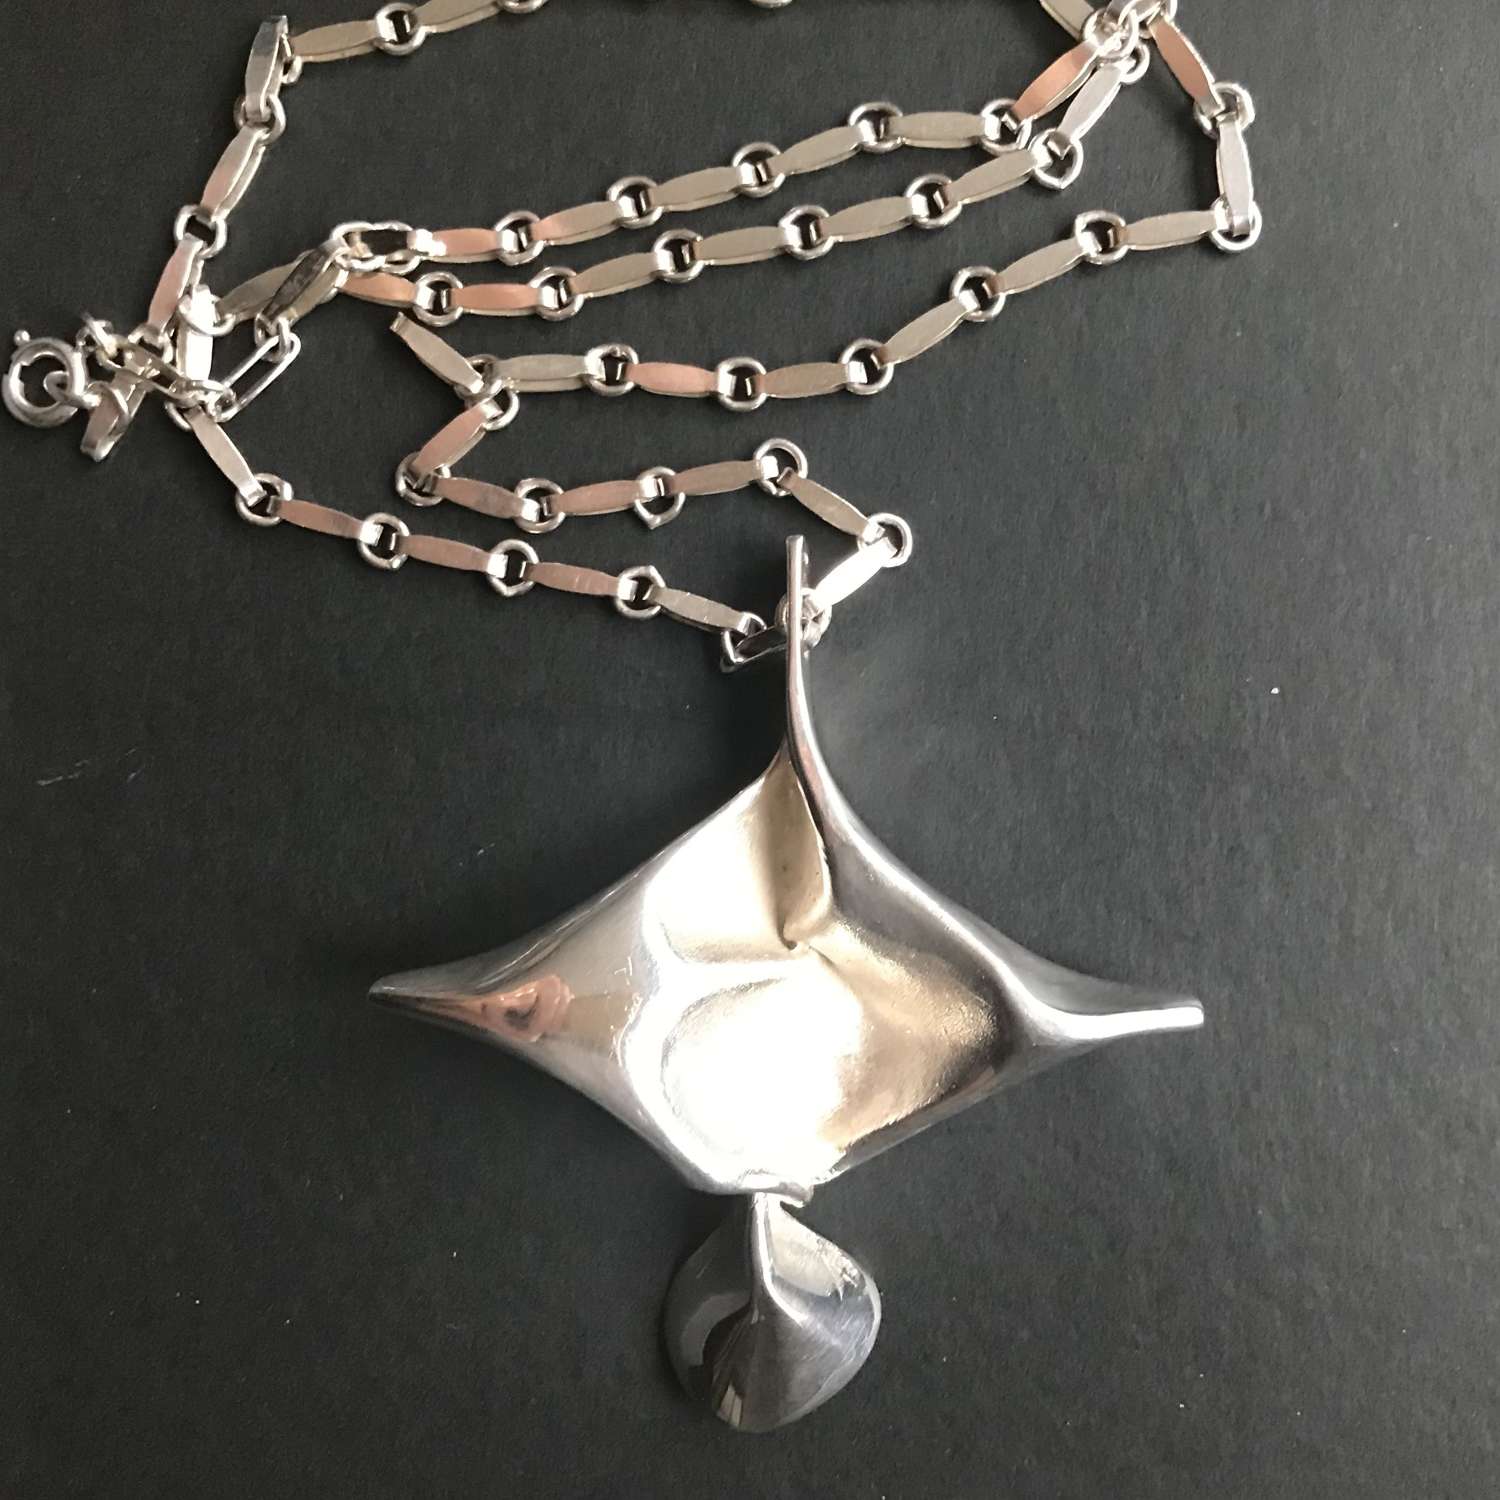 Silver pendant and chain designed by Matti Hyvarinen, Finland 1960s